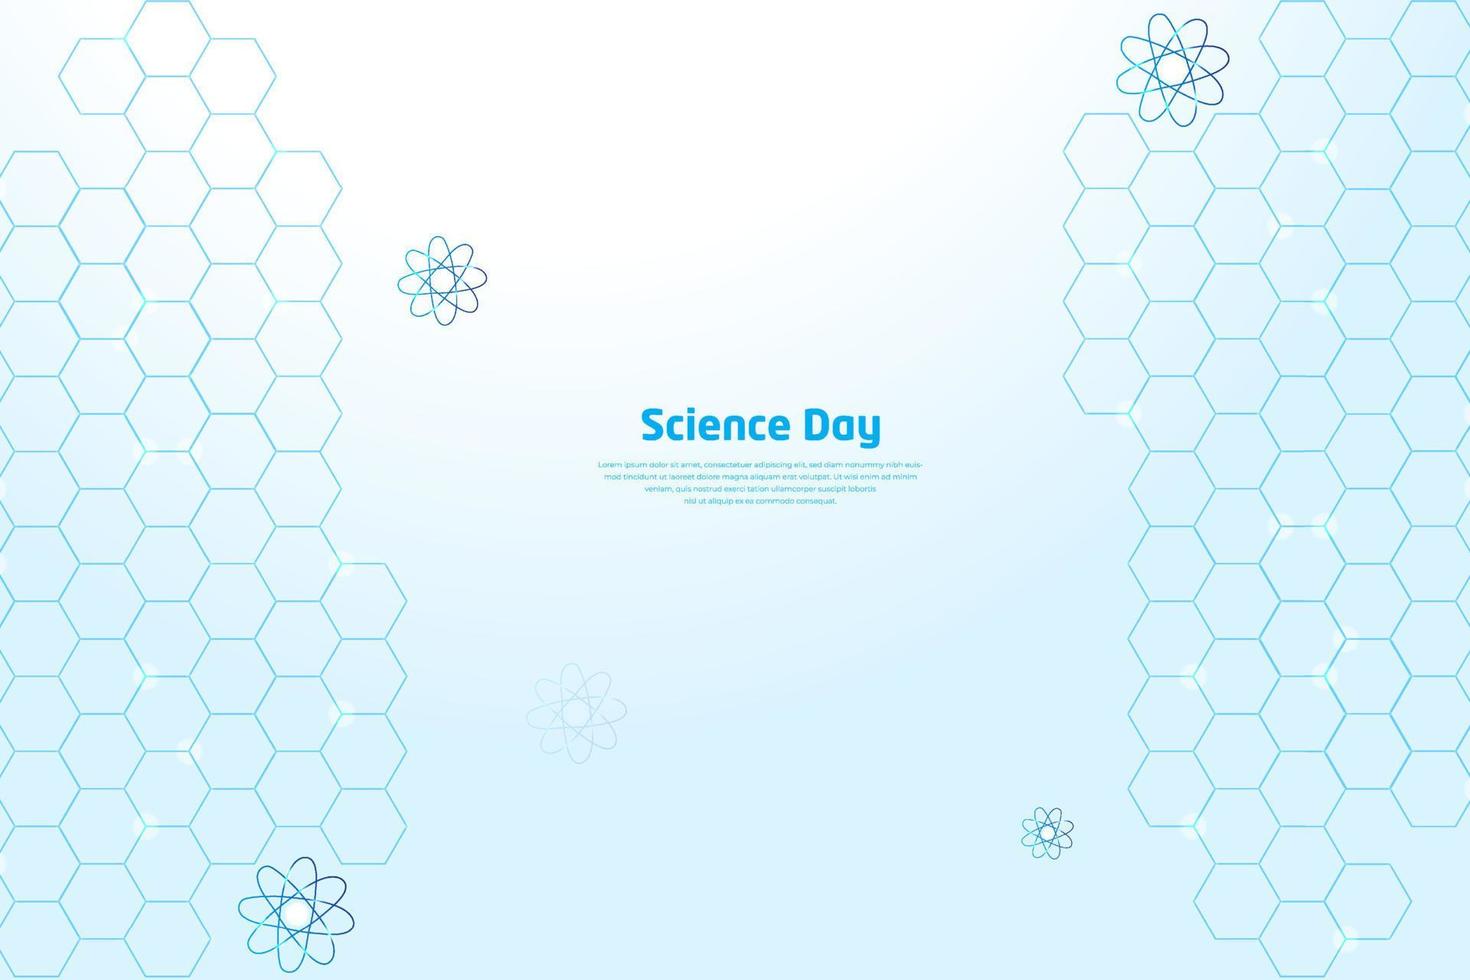 célébration de la journée nationale de la science avec un élément moderne, géométrique, technologique, scientifique et d'innovation. vecteur